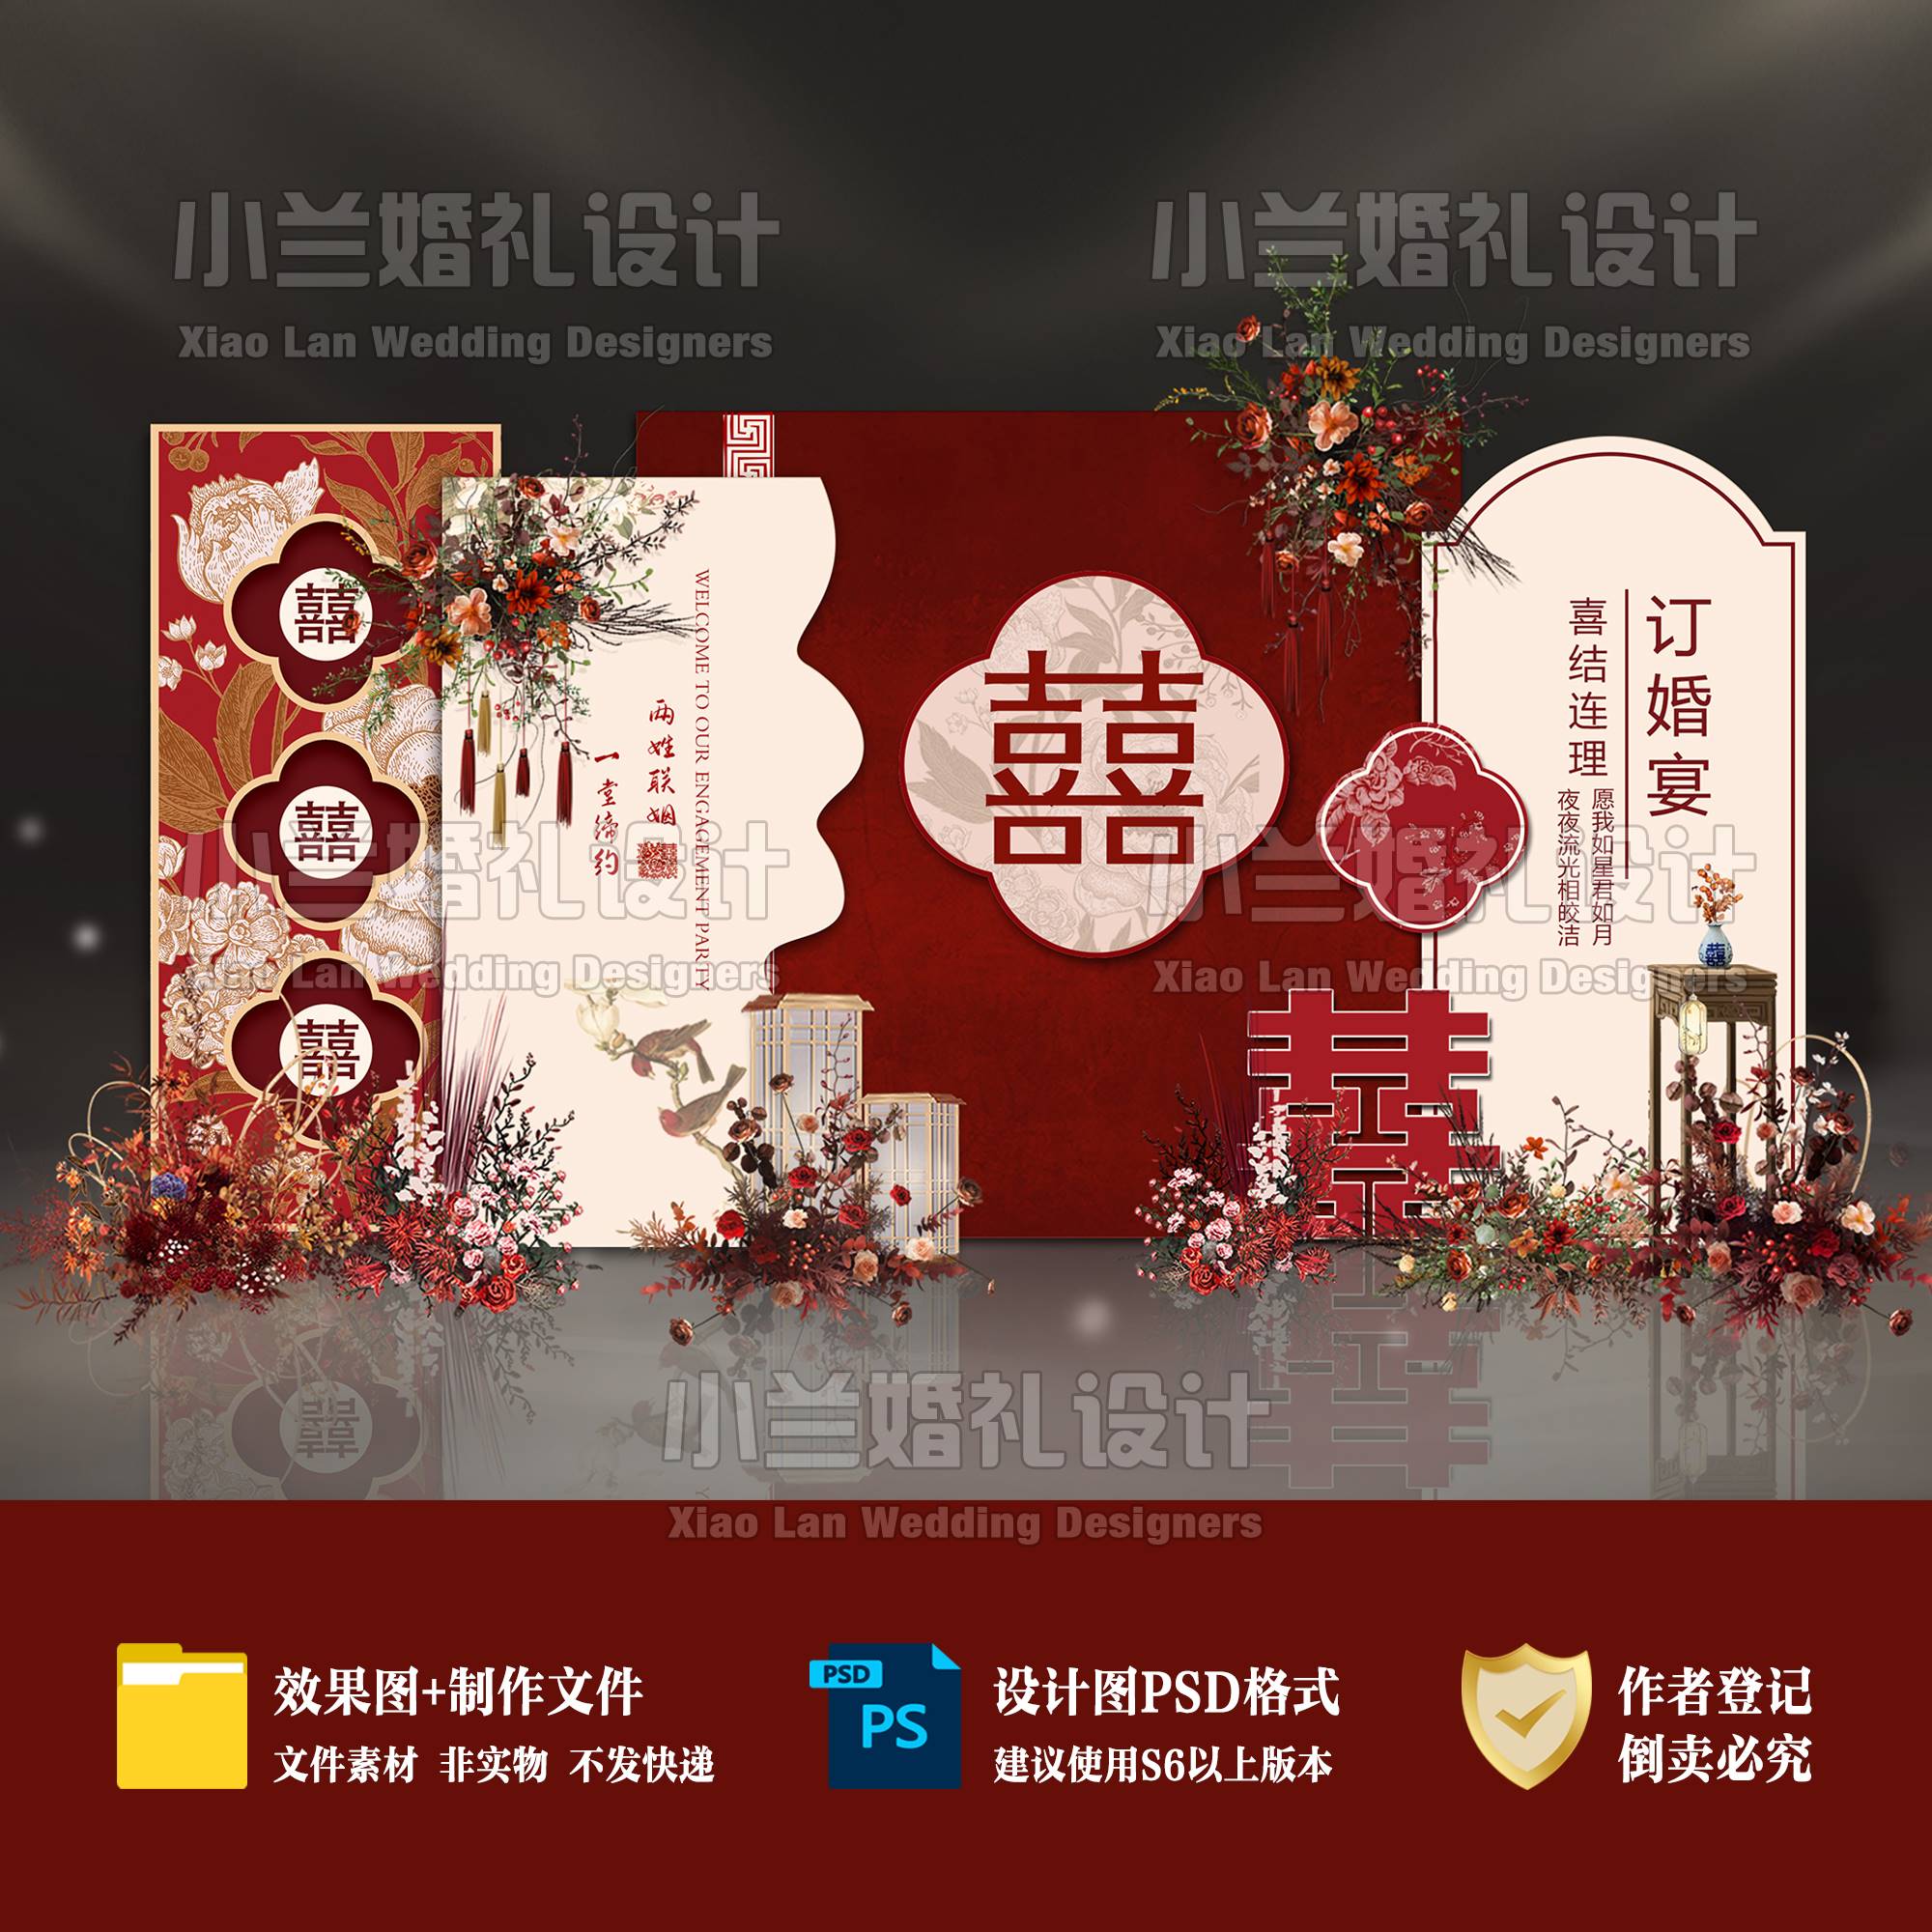 新中式订婚宴中国风婚礼背景设计红色迎宾签到区图素材PSDB20